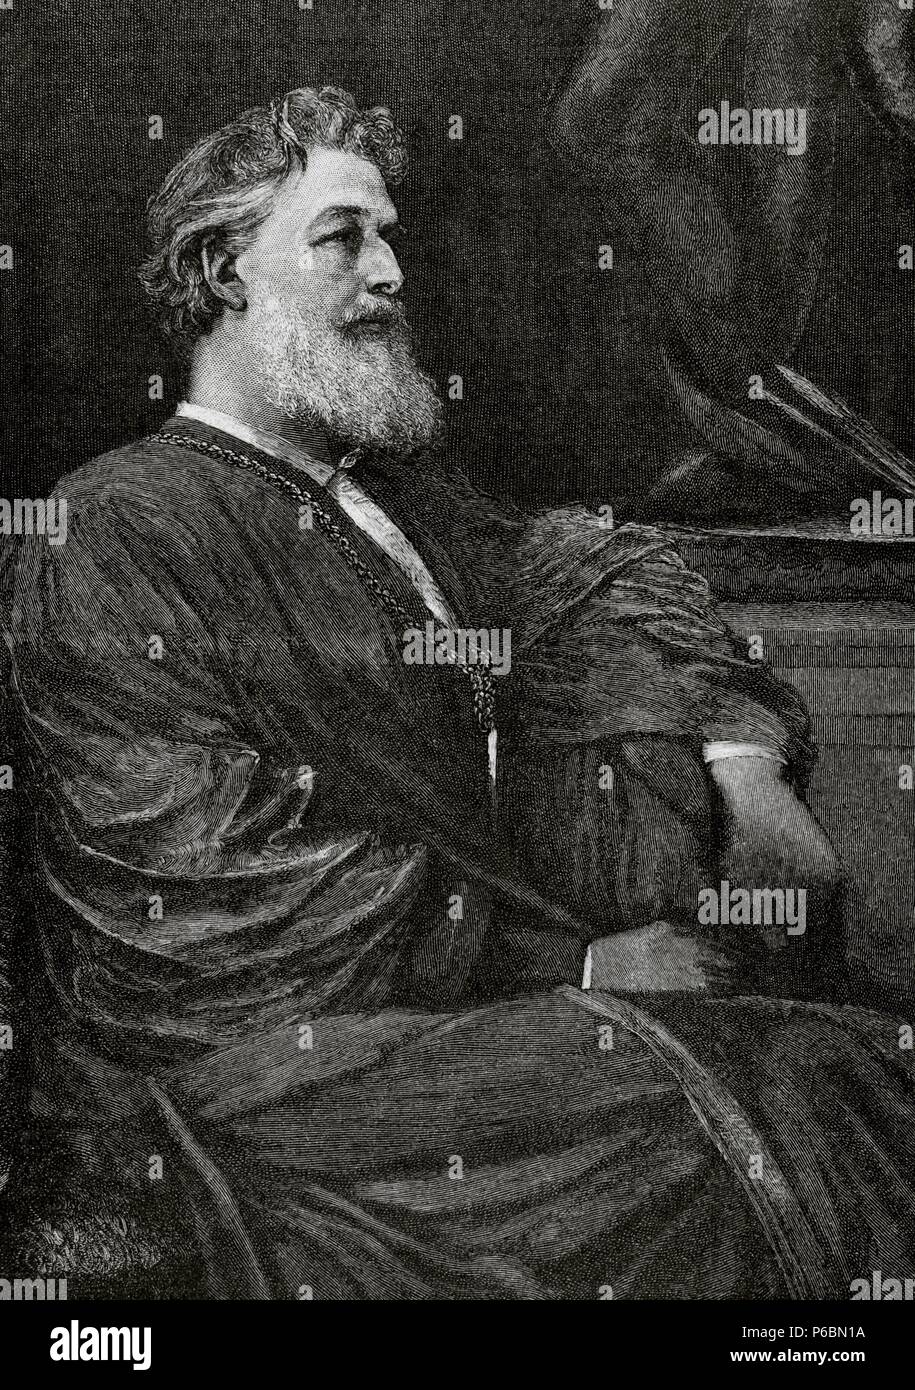 Frederic Leighton, primo Baron Leighton (1830 Ð 1896), noto come Sir Frederic Leighton tra 1878 e 1896. Inglese pittore e scultore. Incisione di 'La Ilustracion Iberica', 1888. Foto Stock